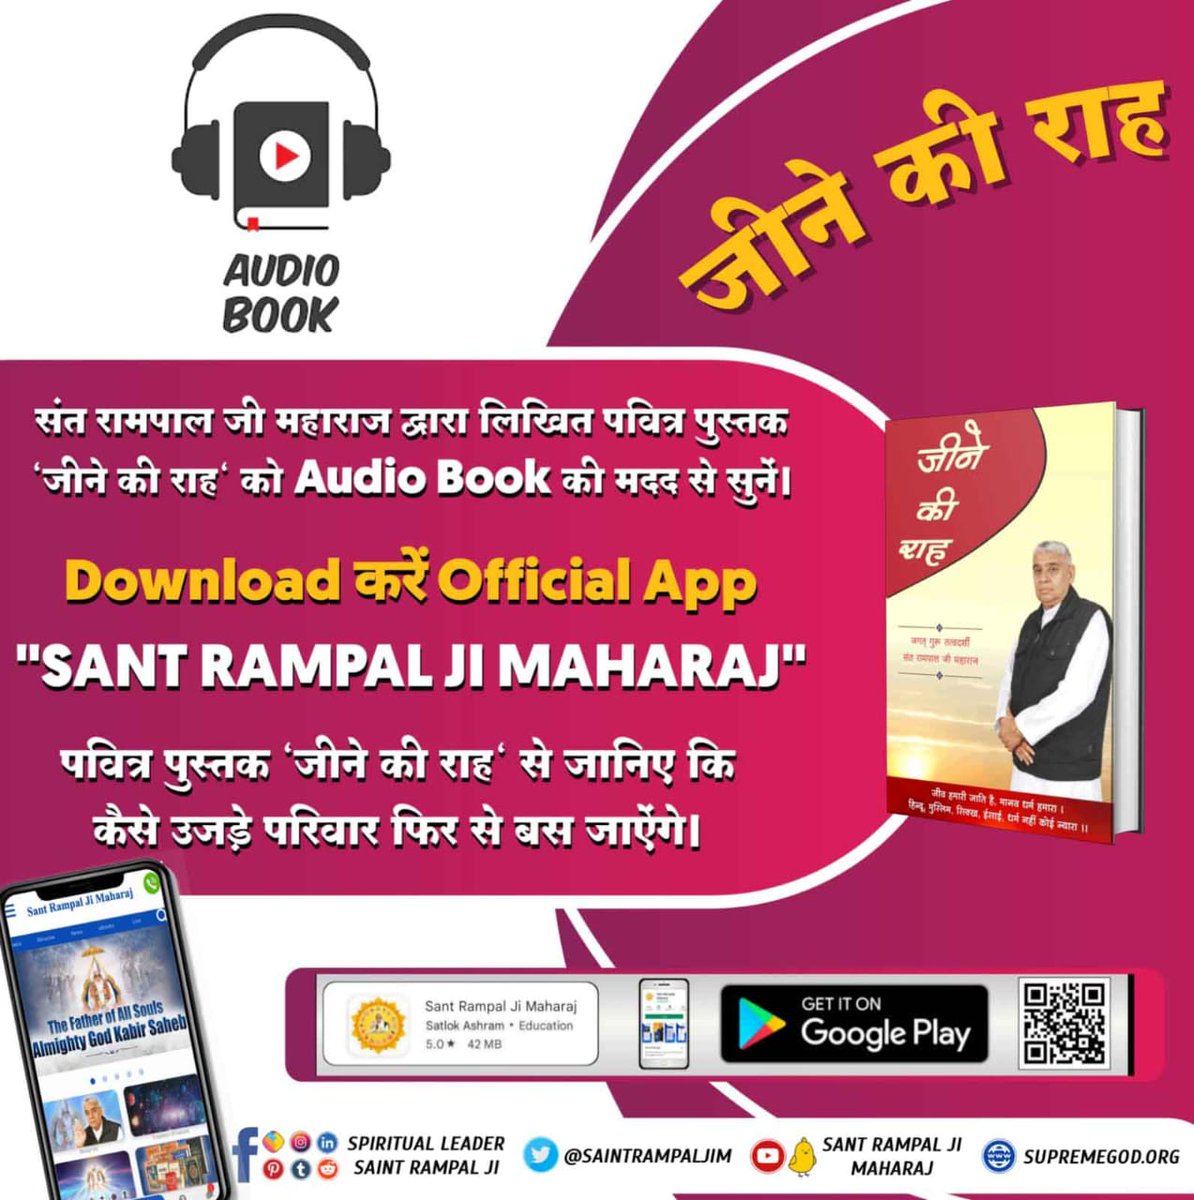 संत रामपाल जी महाराज द्वारा लिखित पवित्र पुस्तक 'जीने की राह' को Audio Book की मदद से सुनें। Audio Book Sant Rampal Ji Maharaj पर उपलब्ध है।
Download sant rampal ji Maharaj app